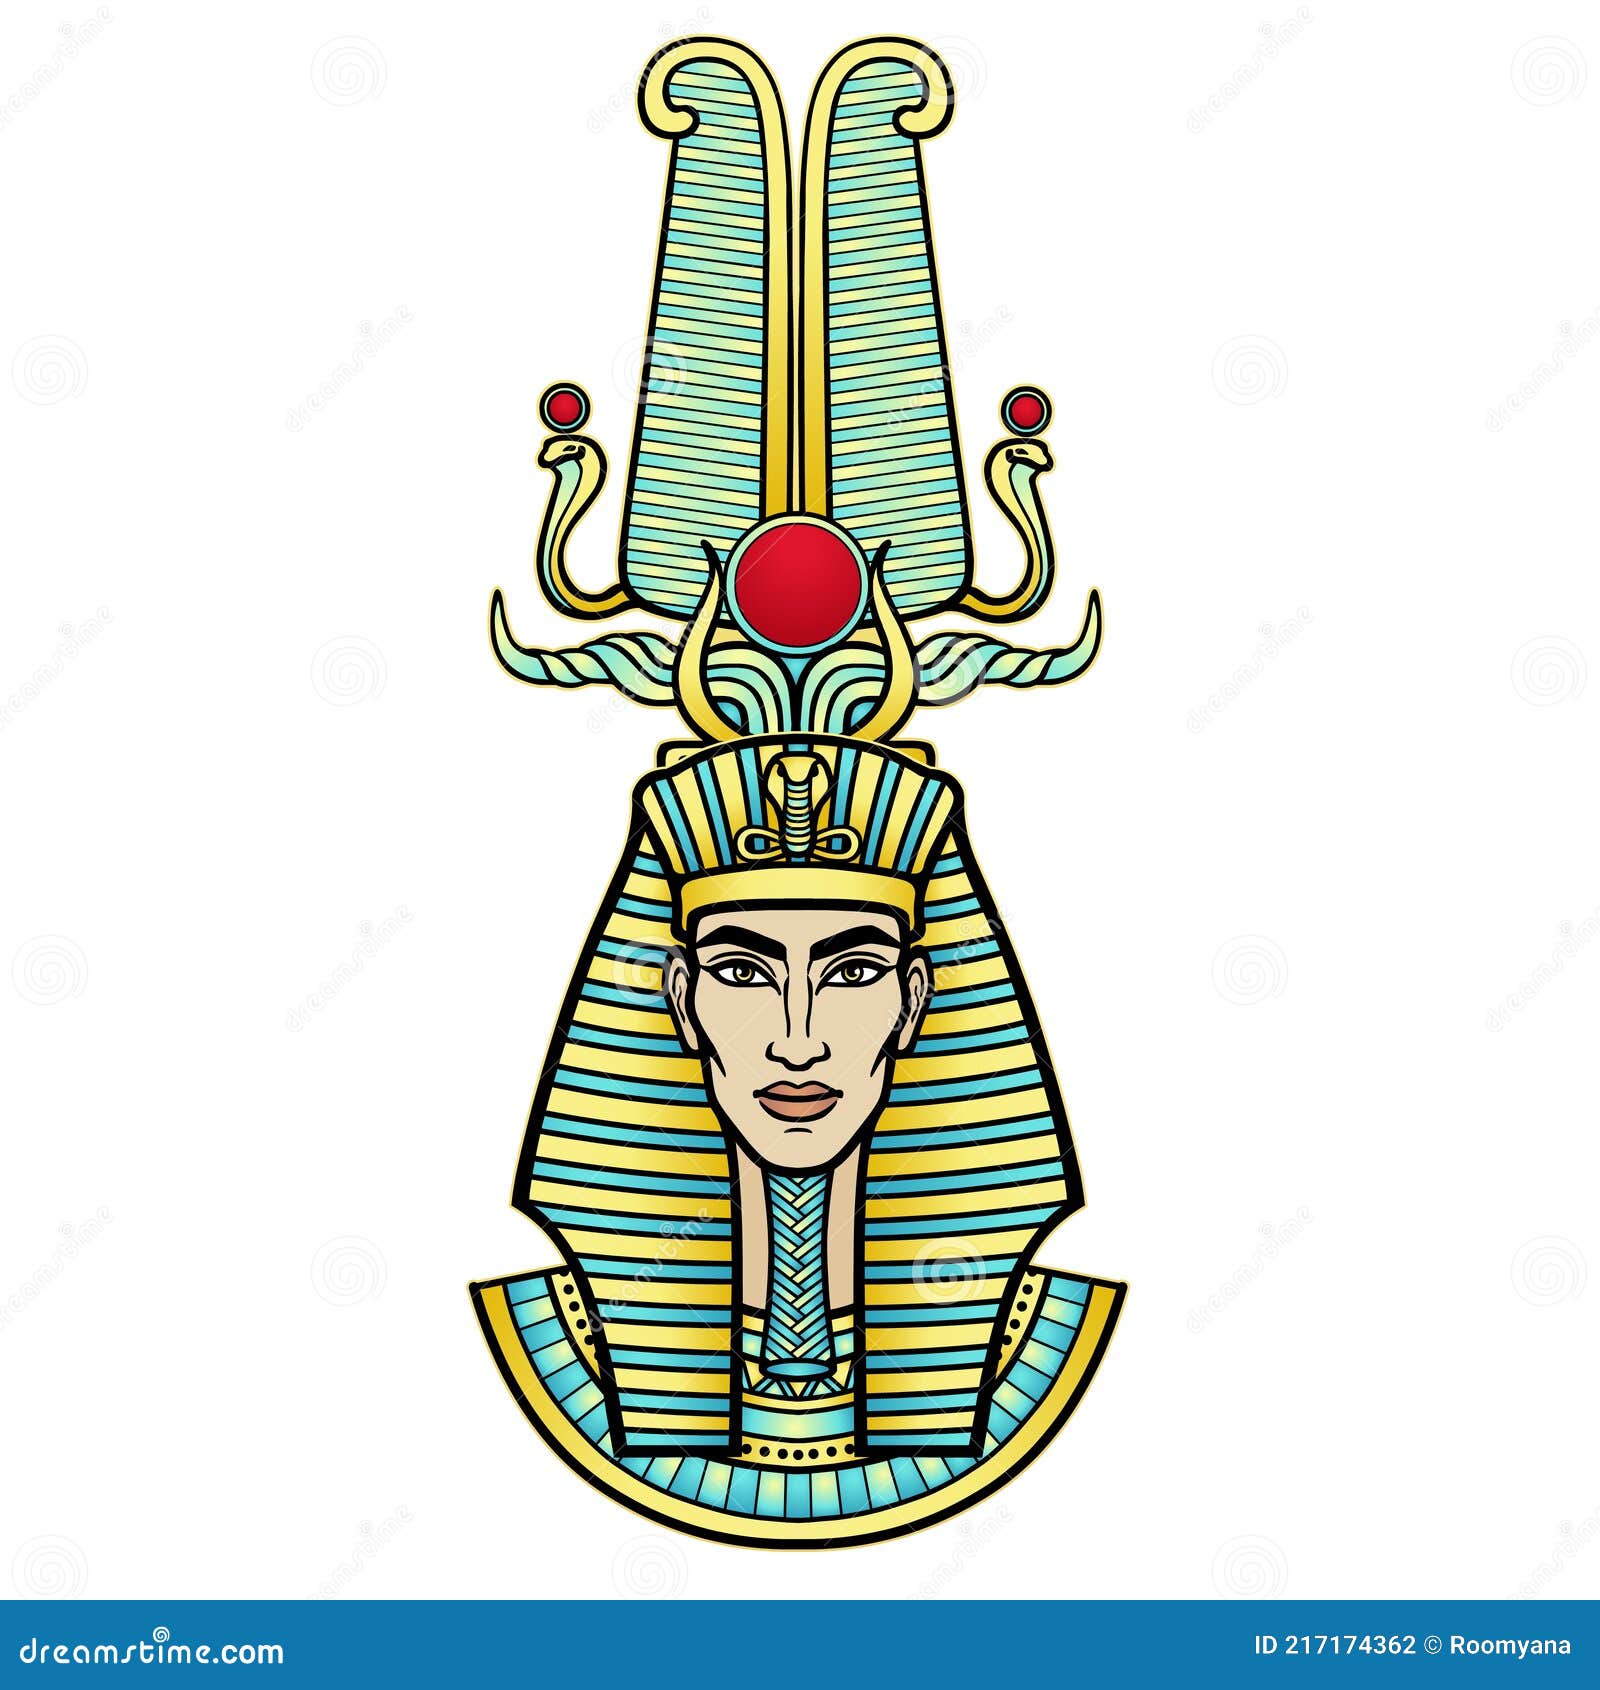 Couscous Ademen Rendezvous Animatieportret Egyptische Man in Een Gestreepte Sjaal En Een Goddelijke  Kroon. Vector Illustratie - Illustration of amenhotep, egyptisch: 217174362